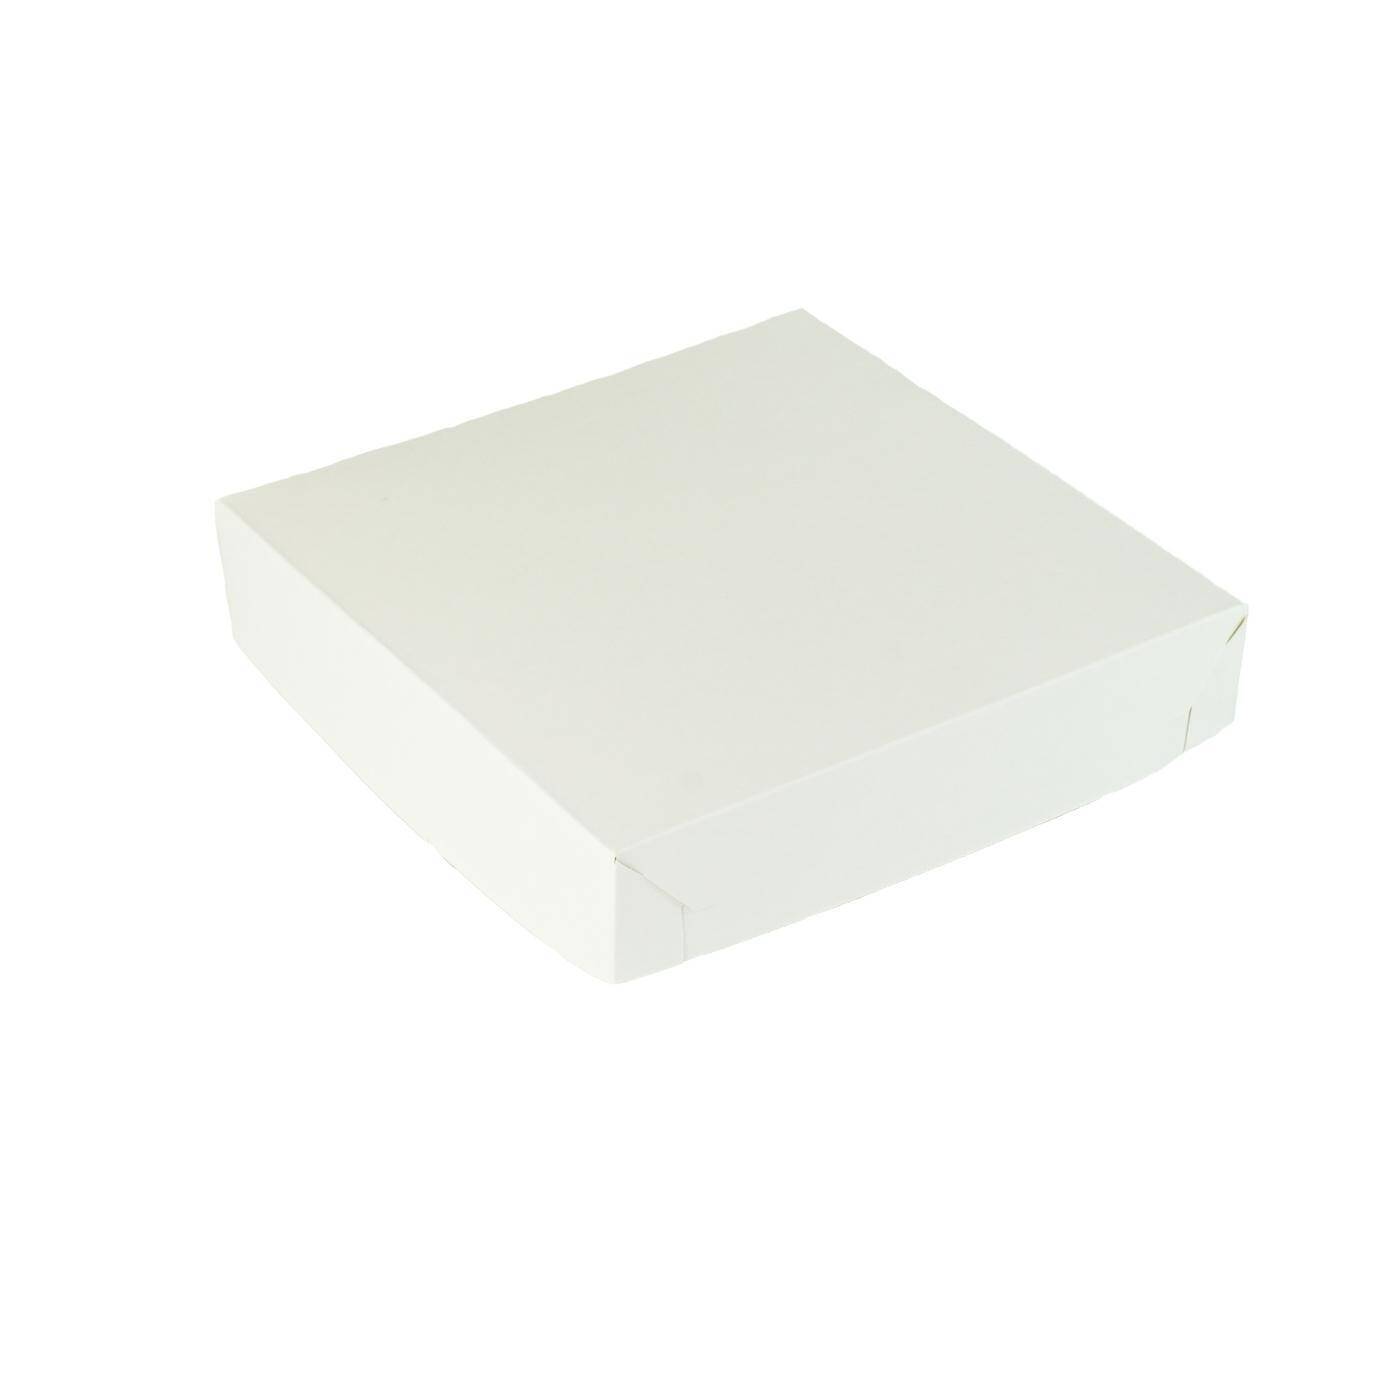 Pudełko cukiernicze 20x20x4 białe